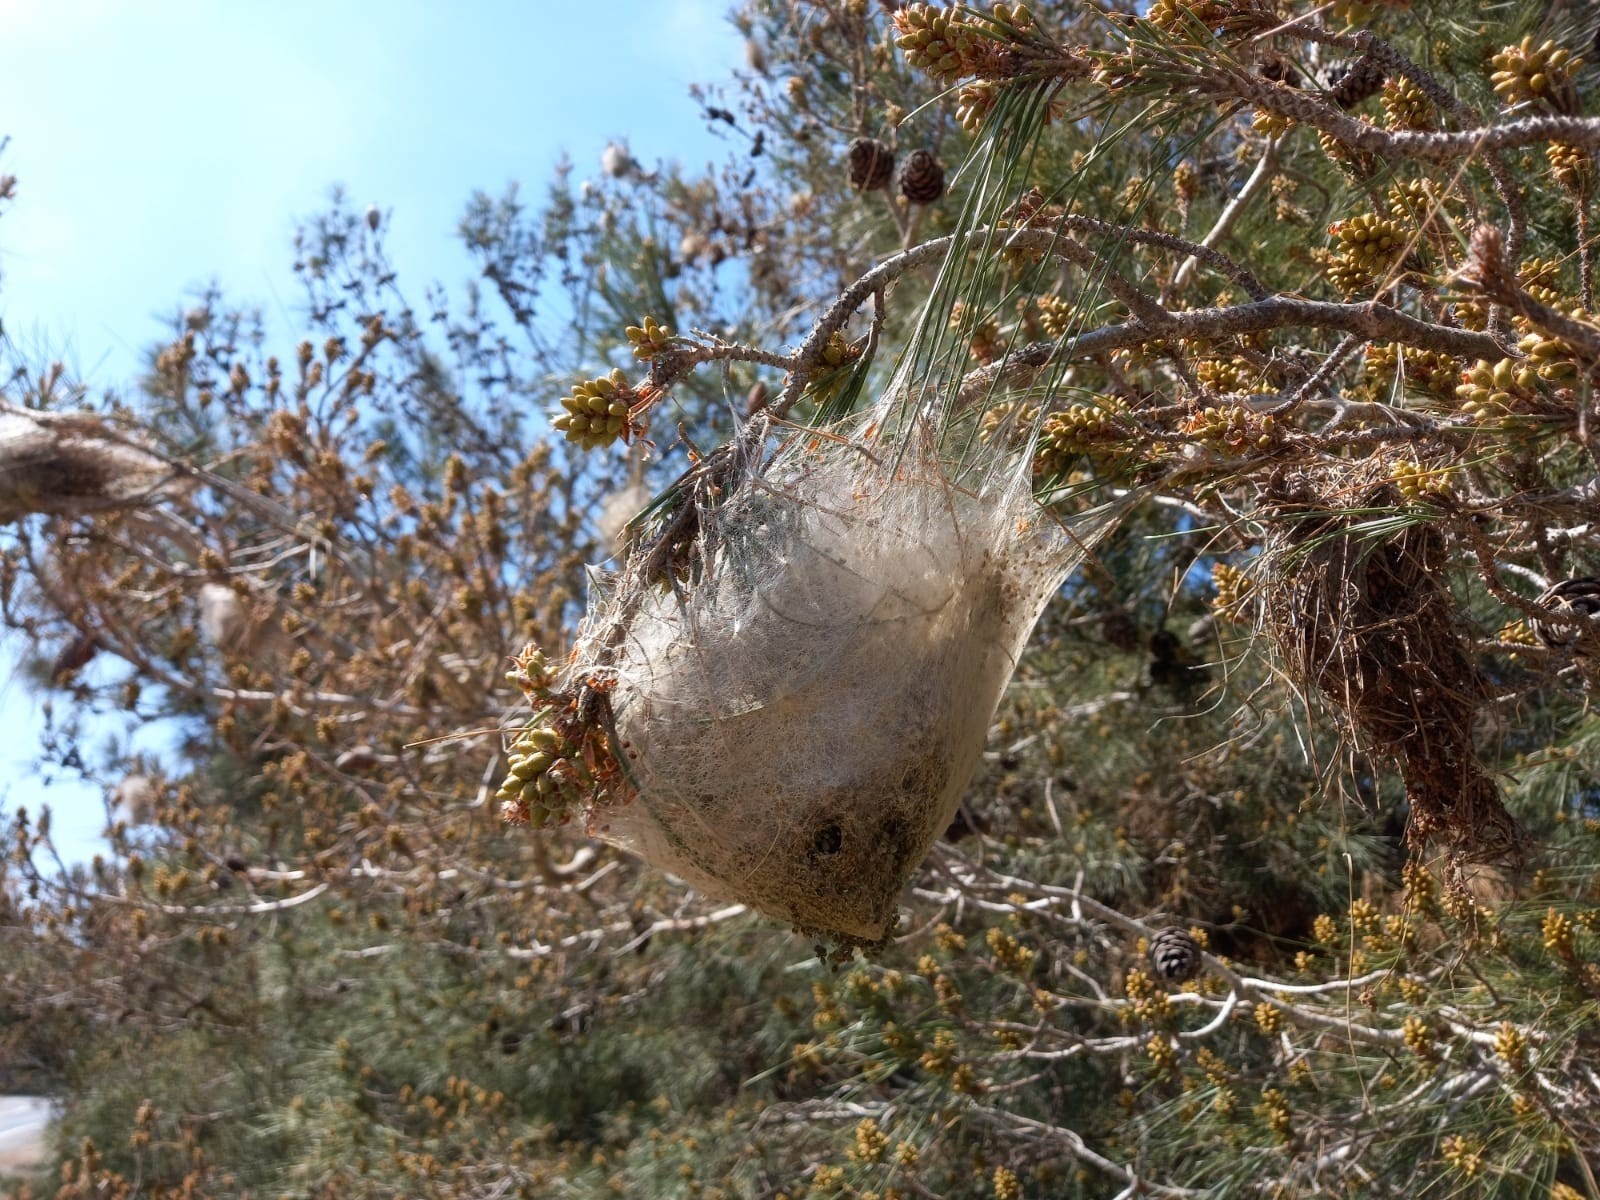 Biyologlar Derneği:Çam kese böceğine karşı havadan ilaçlama yapılmazsa geri dönüşü olmayan tahribat yaşanacak